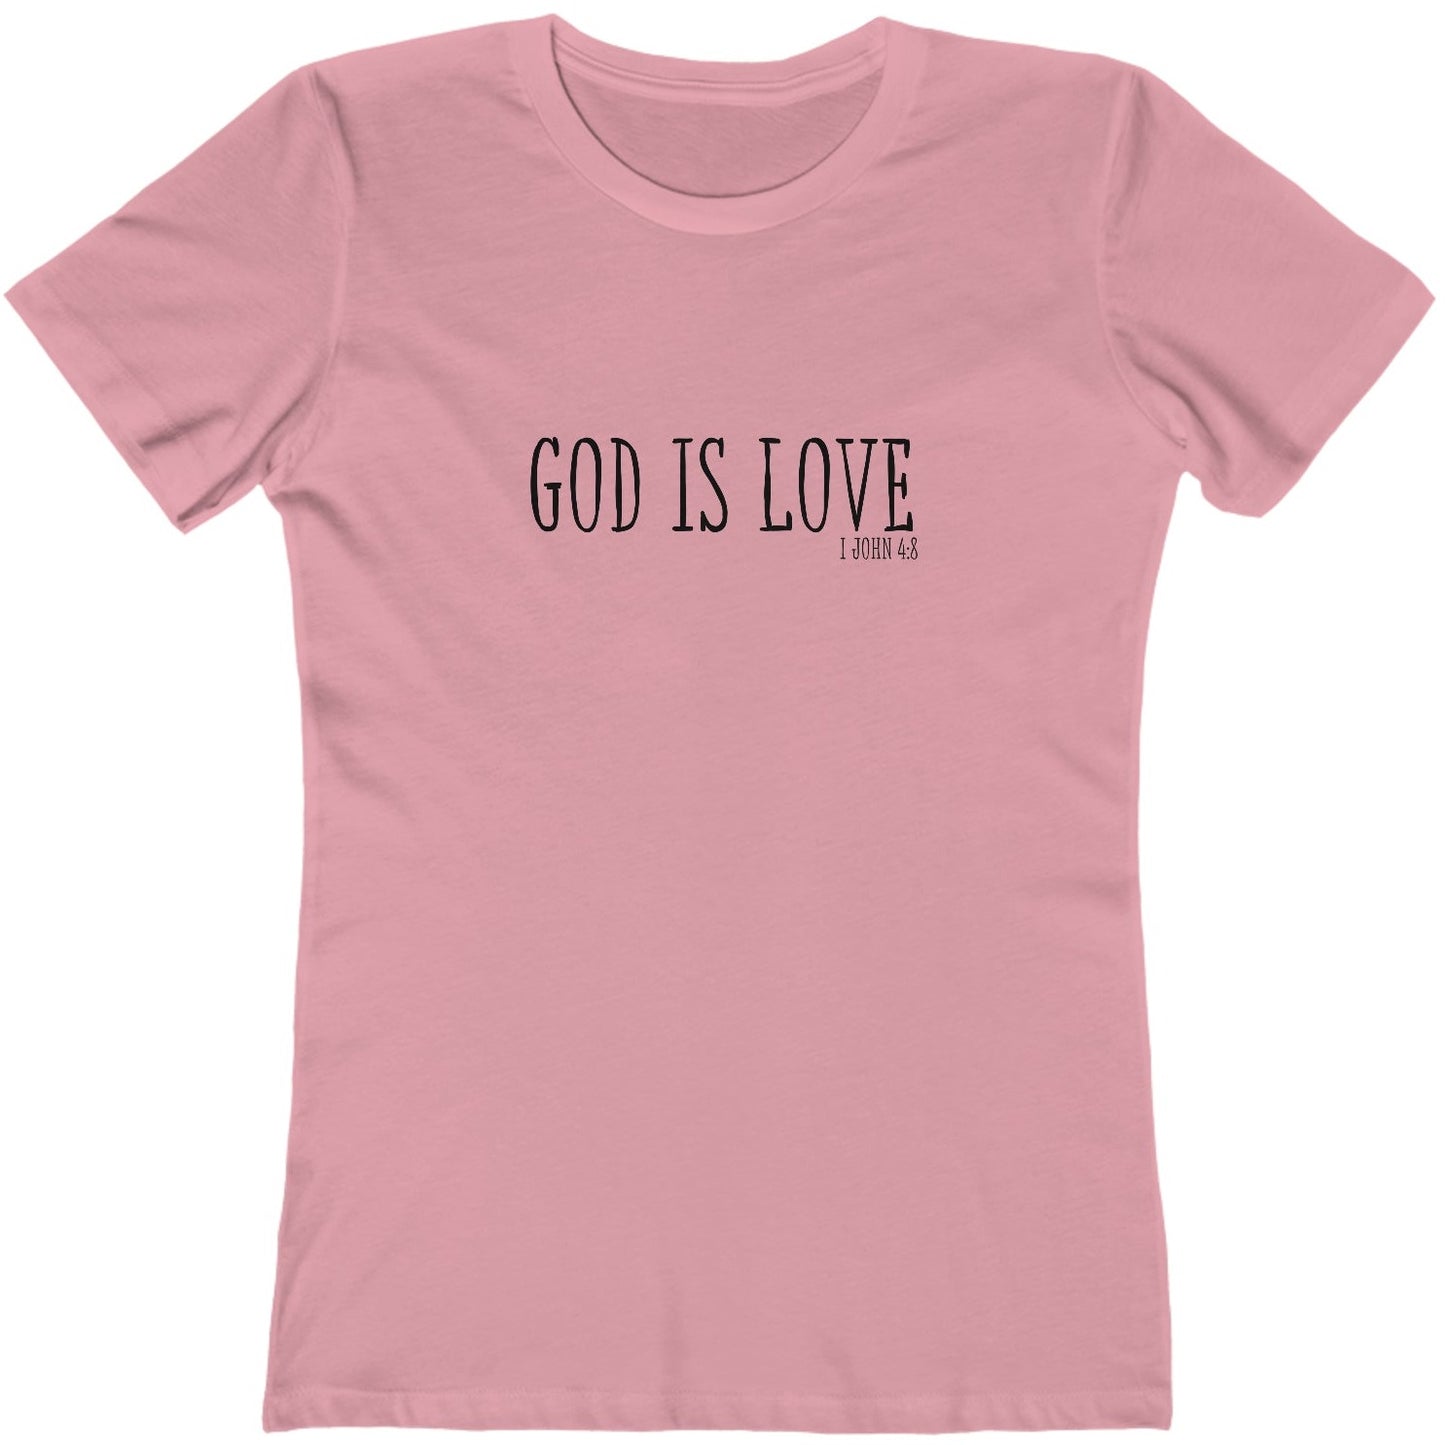 1 John 4:8 God is Love, Christian T-shirt for Women pink